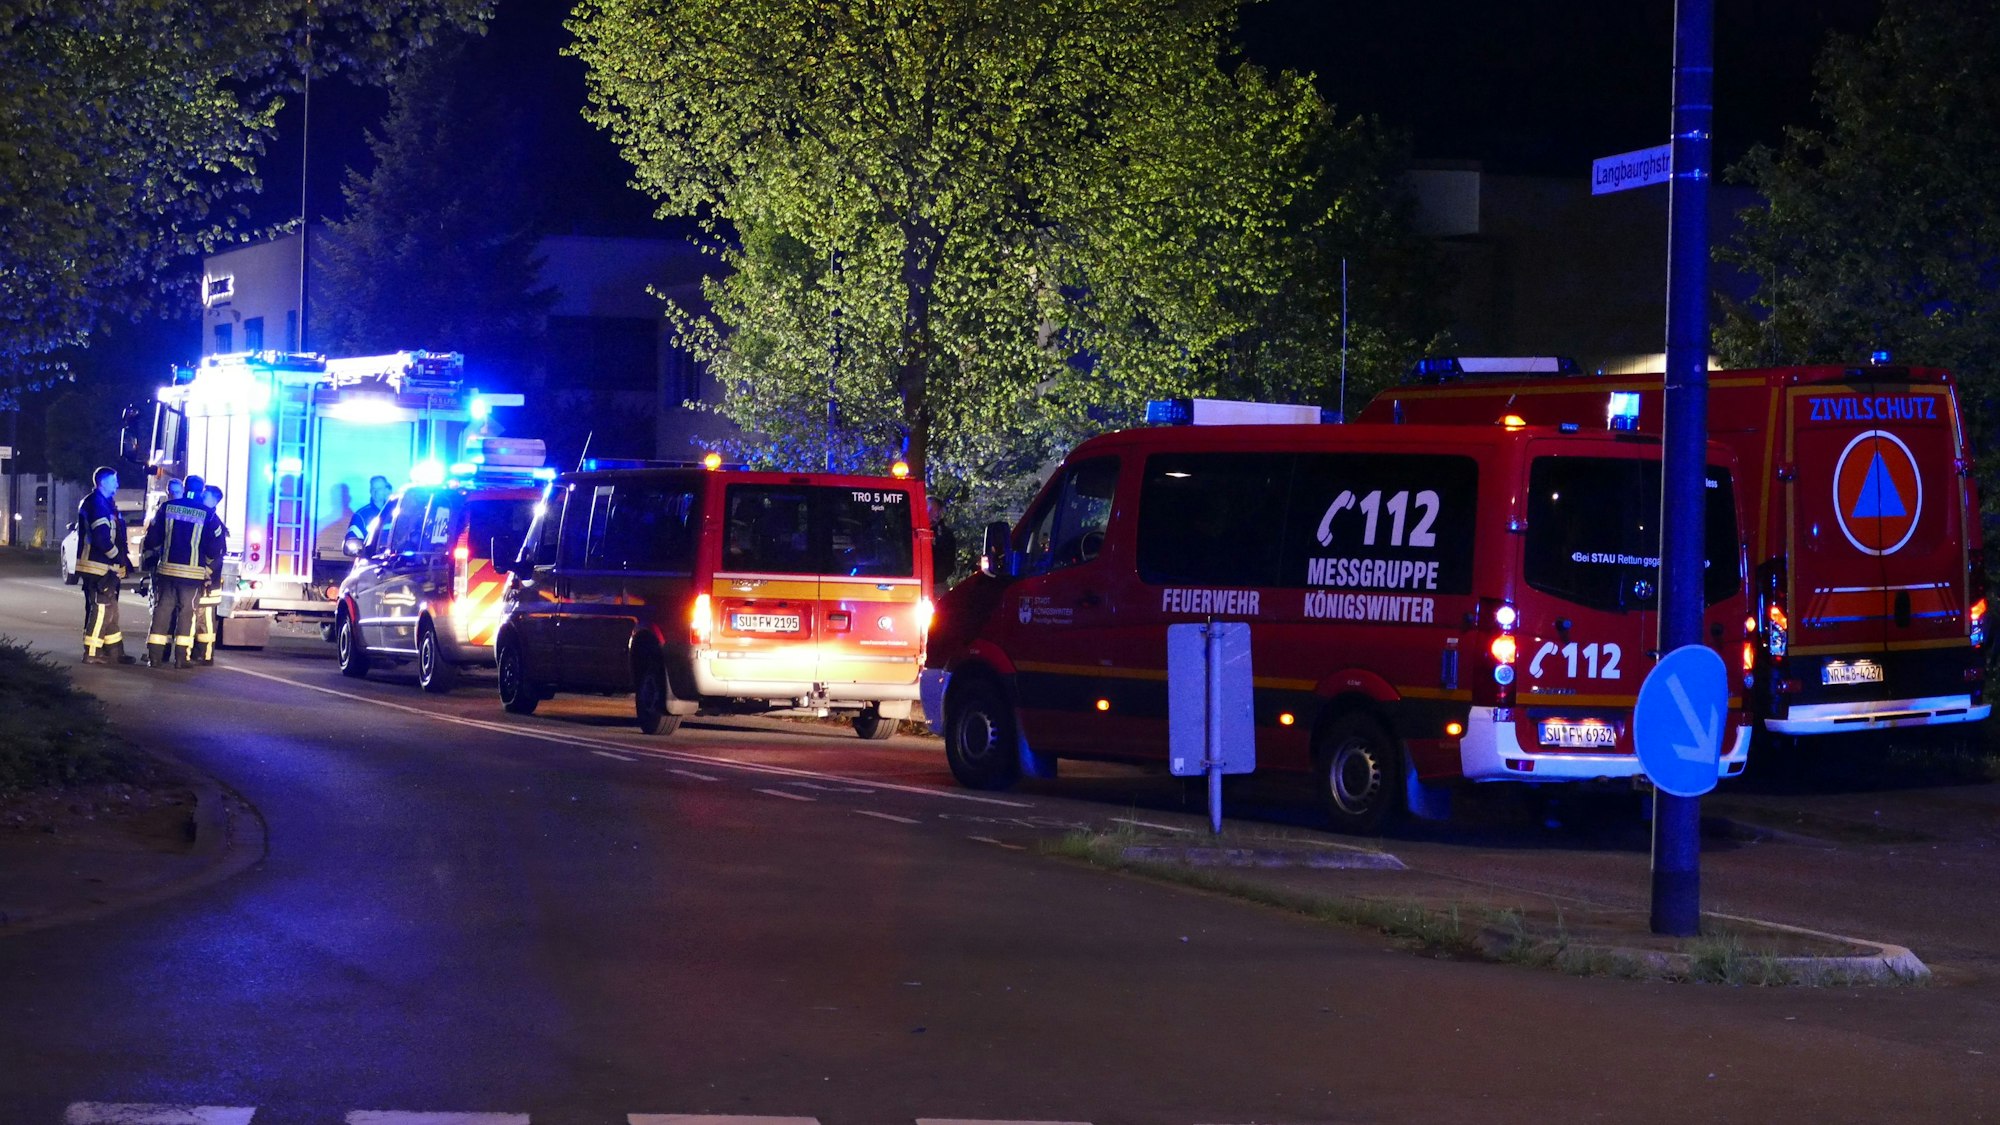 Mehrere Einsatzfahrzeuge der Feuerwehr stehen in der Nacht auf einer Straße.